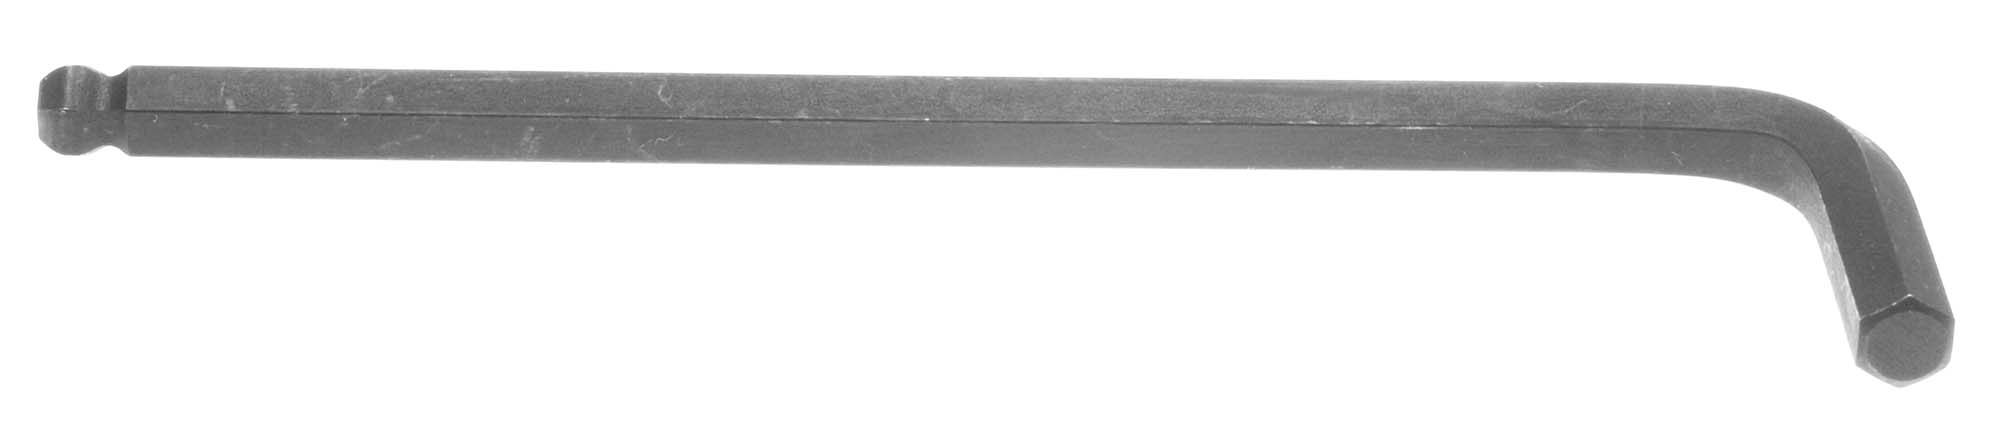 5/16" Bondhus Balldriver L-Wrench Hex Key